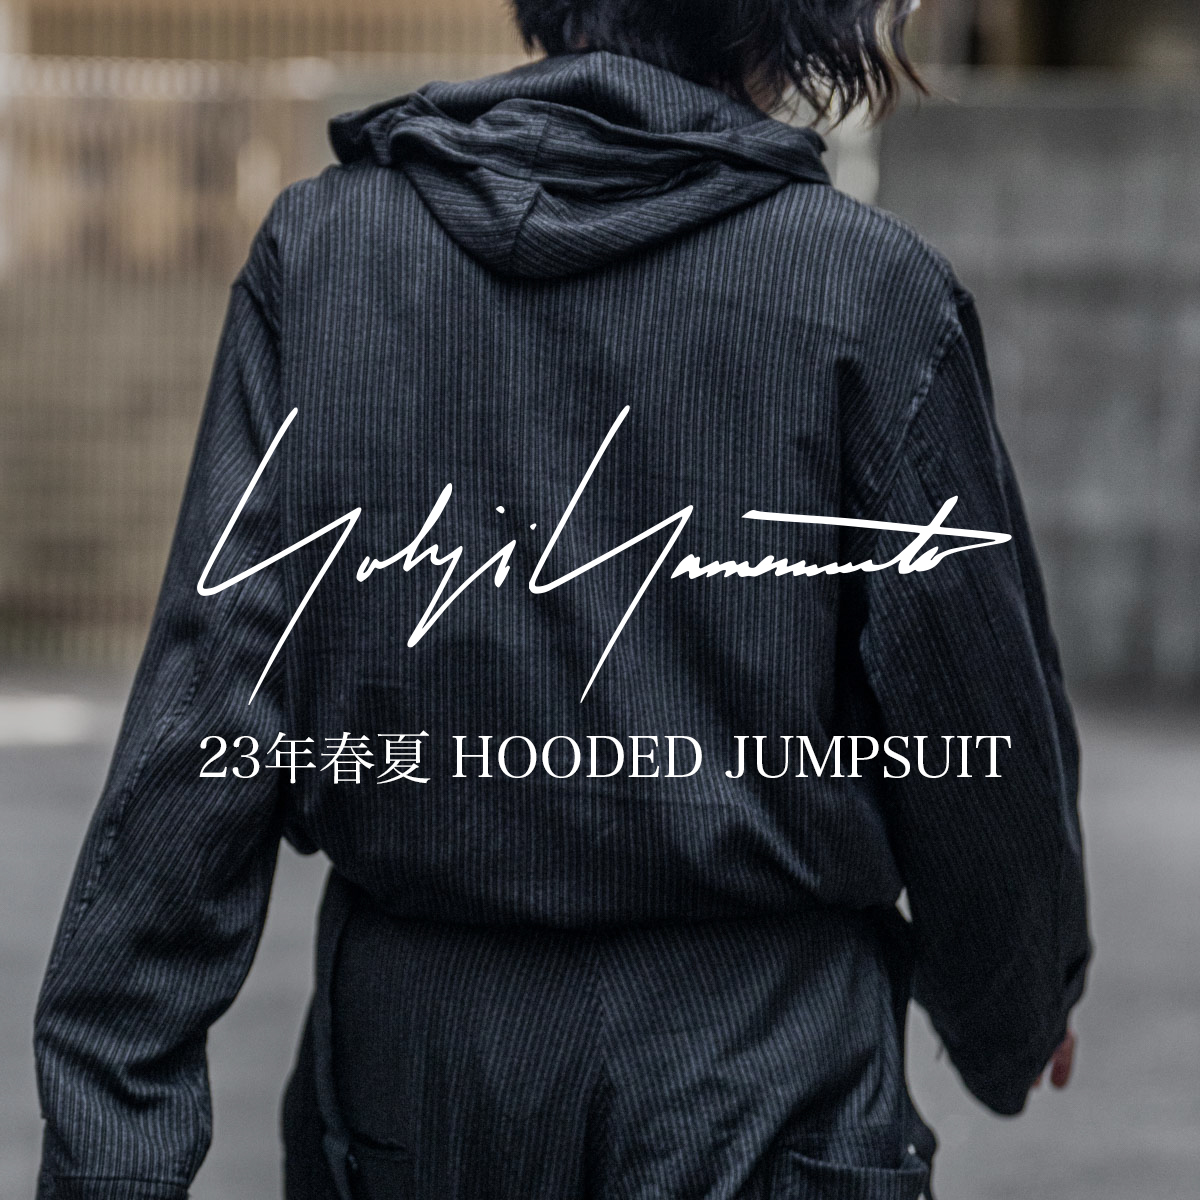 YOHJI YAMAMOTO フーデッドジャンプスーツ | HUES 福岡セレクトショップ